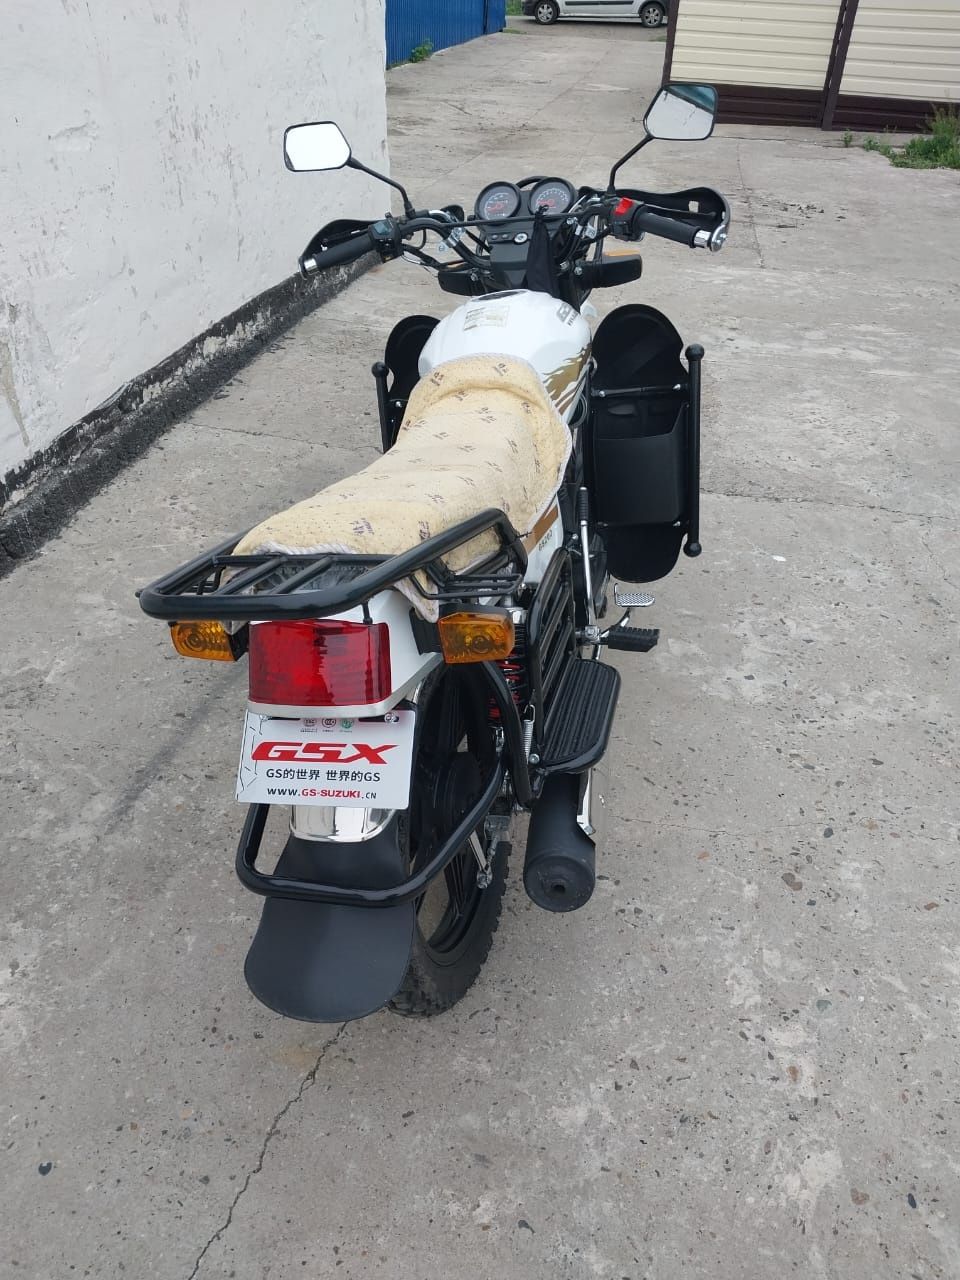 Мотоцикл Suzuki gs200